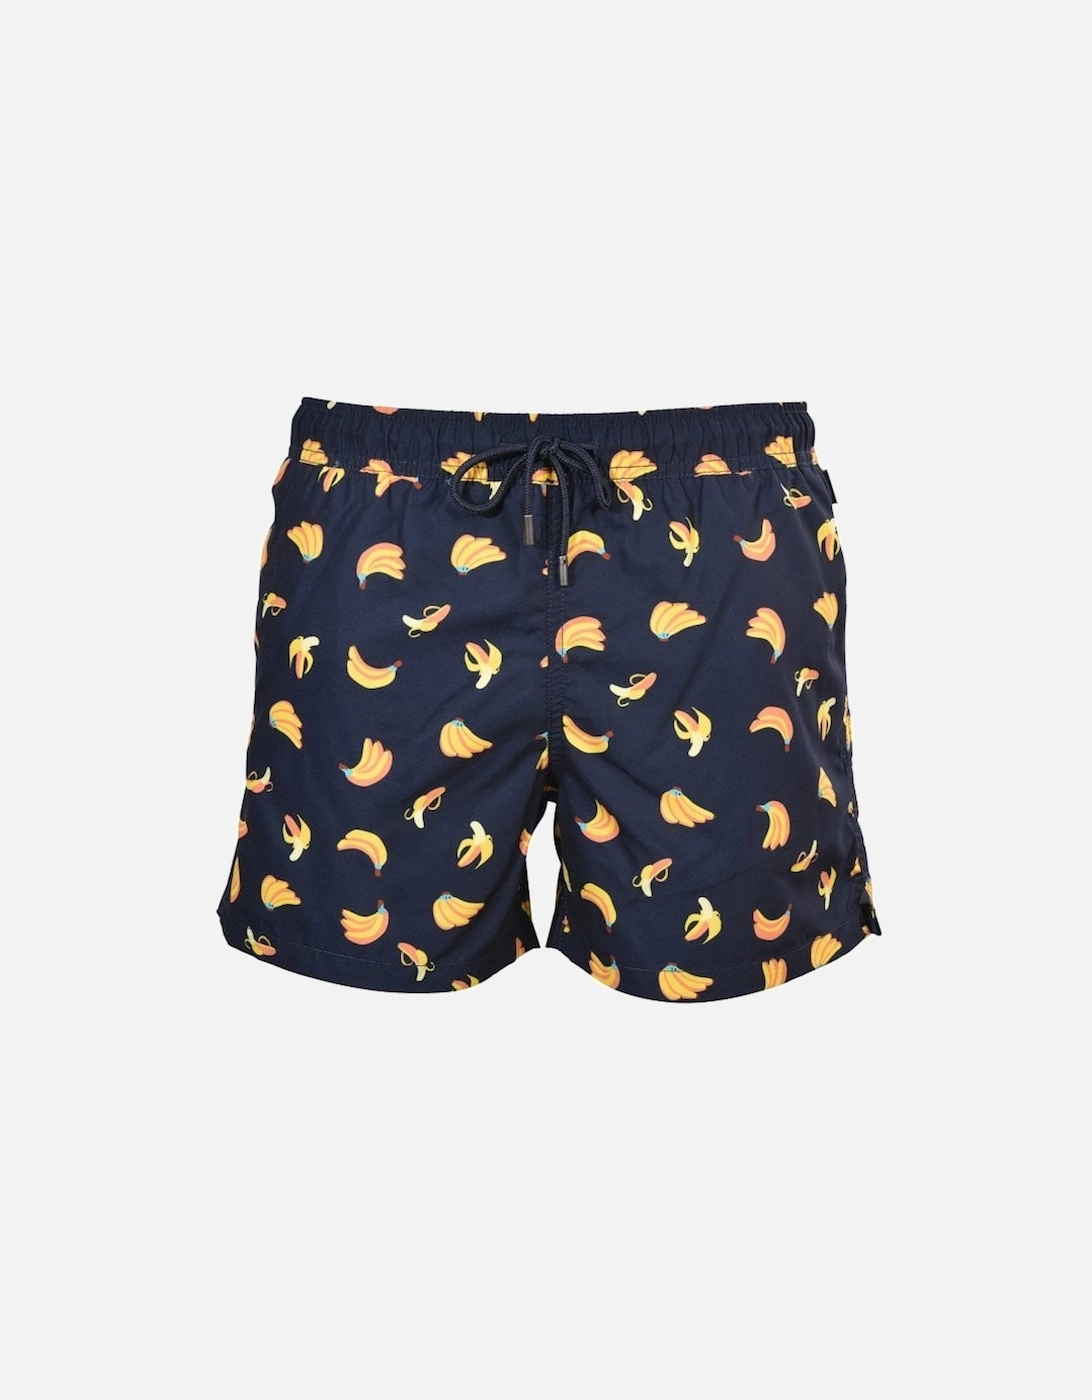 Banana Swim Shorts, Navy/yellow, 4 of 3